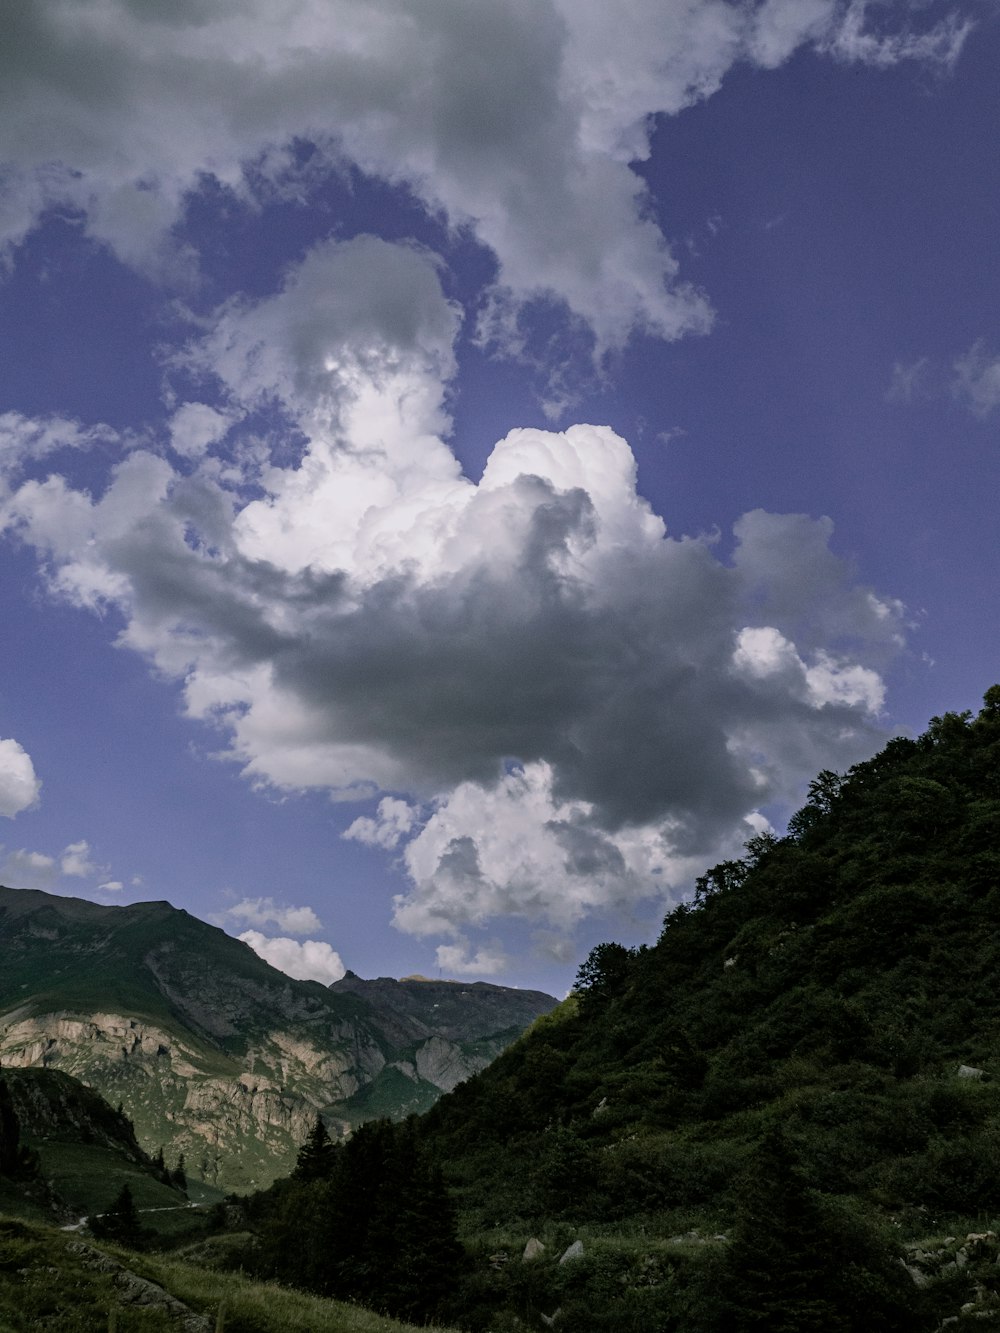 montaña verde bajo nubes blancas y cielo azul durante el día